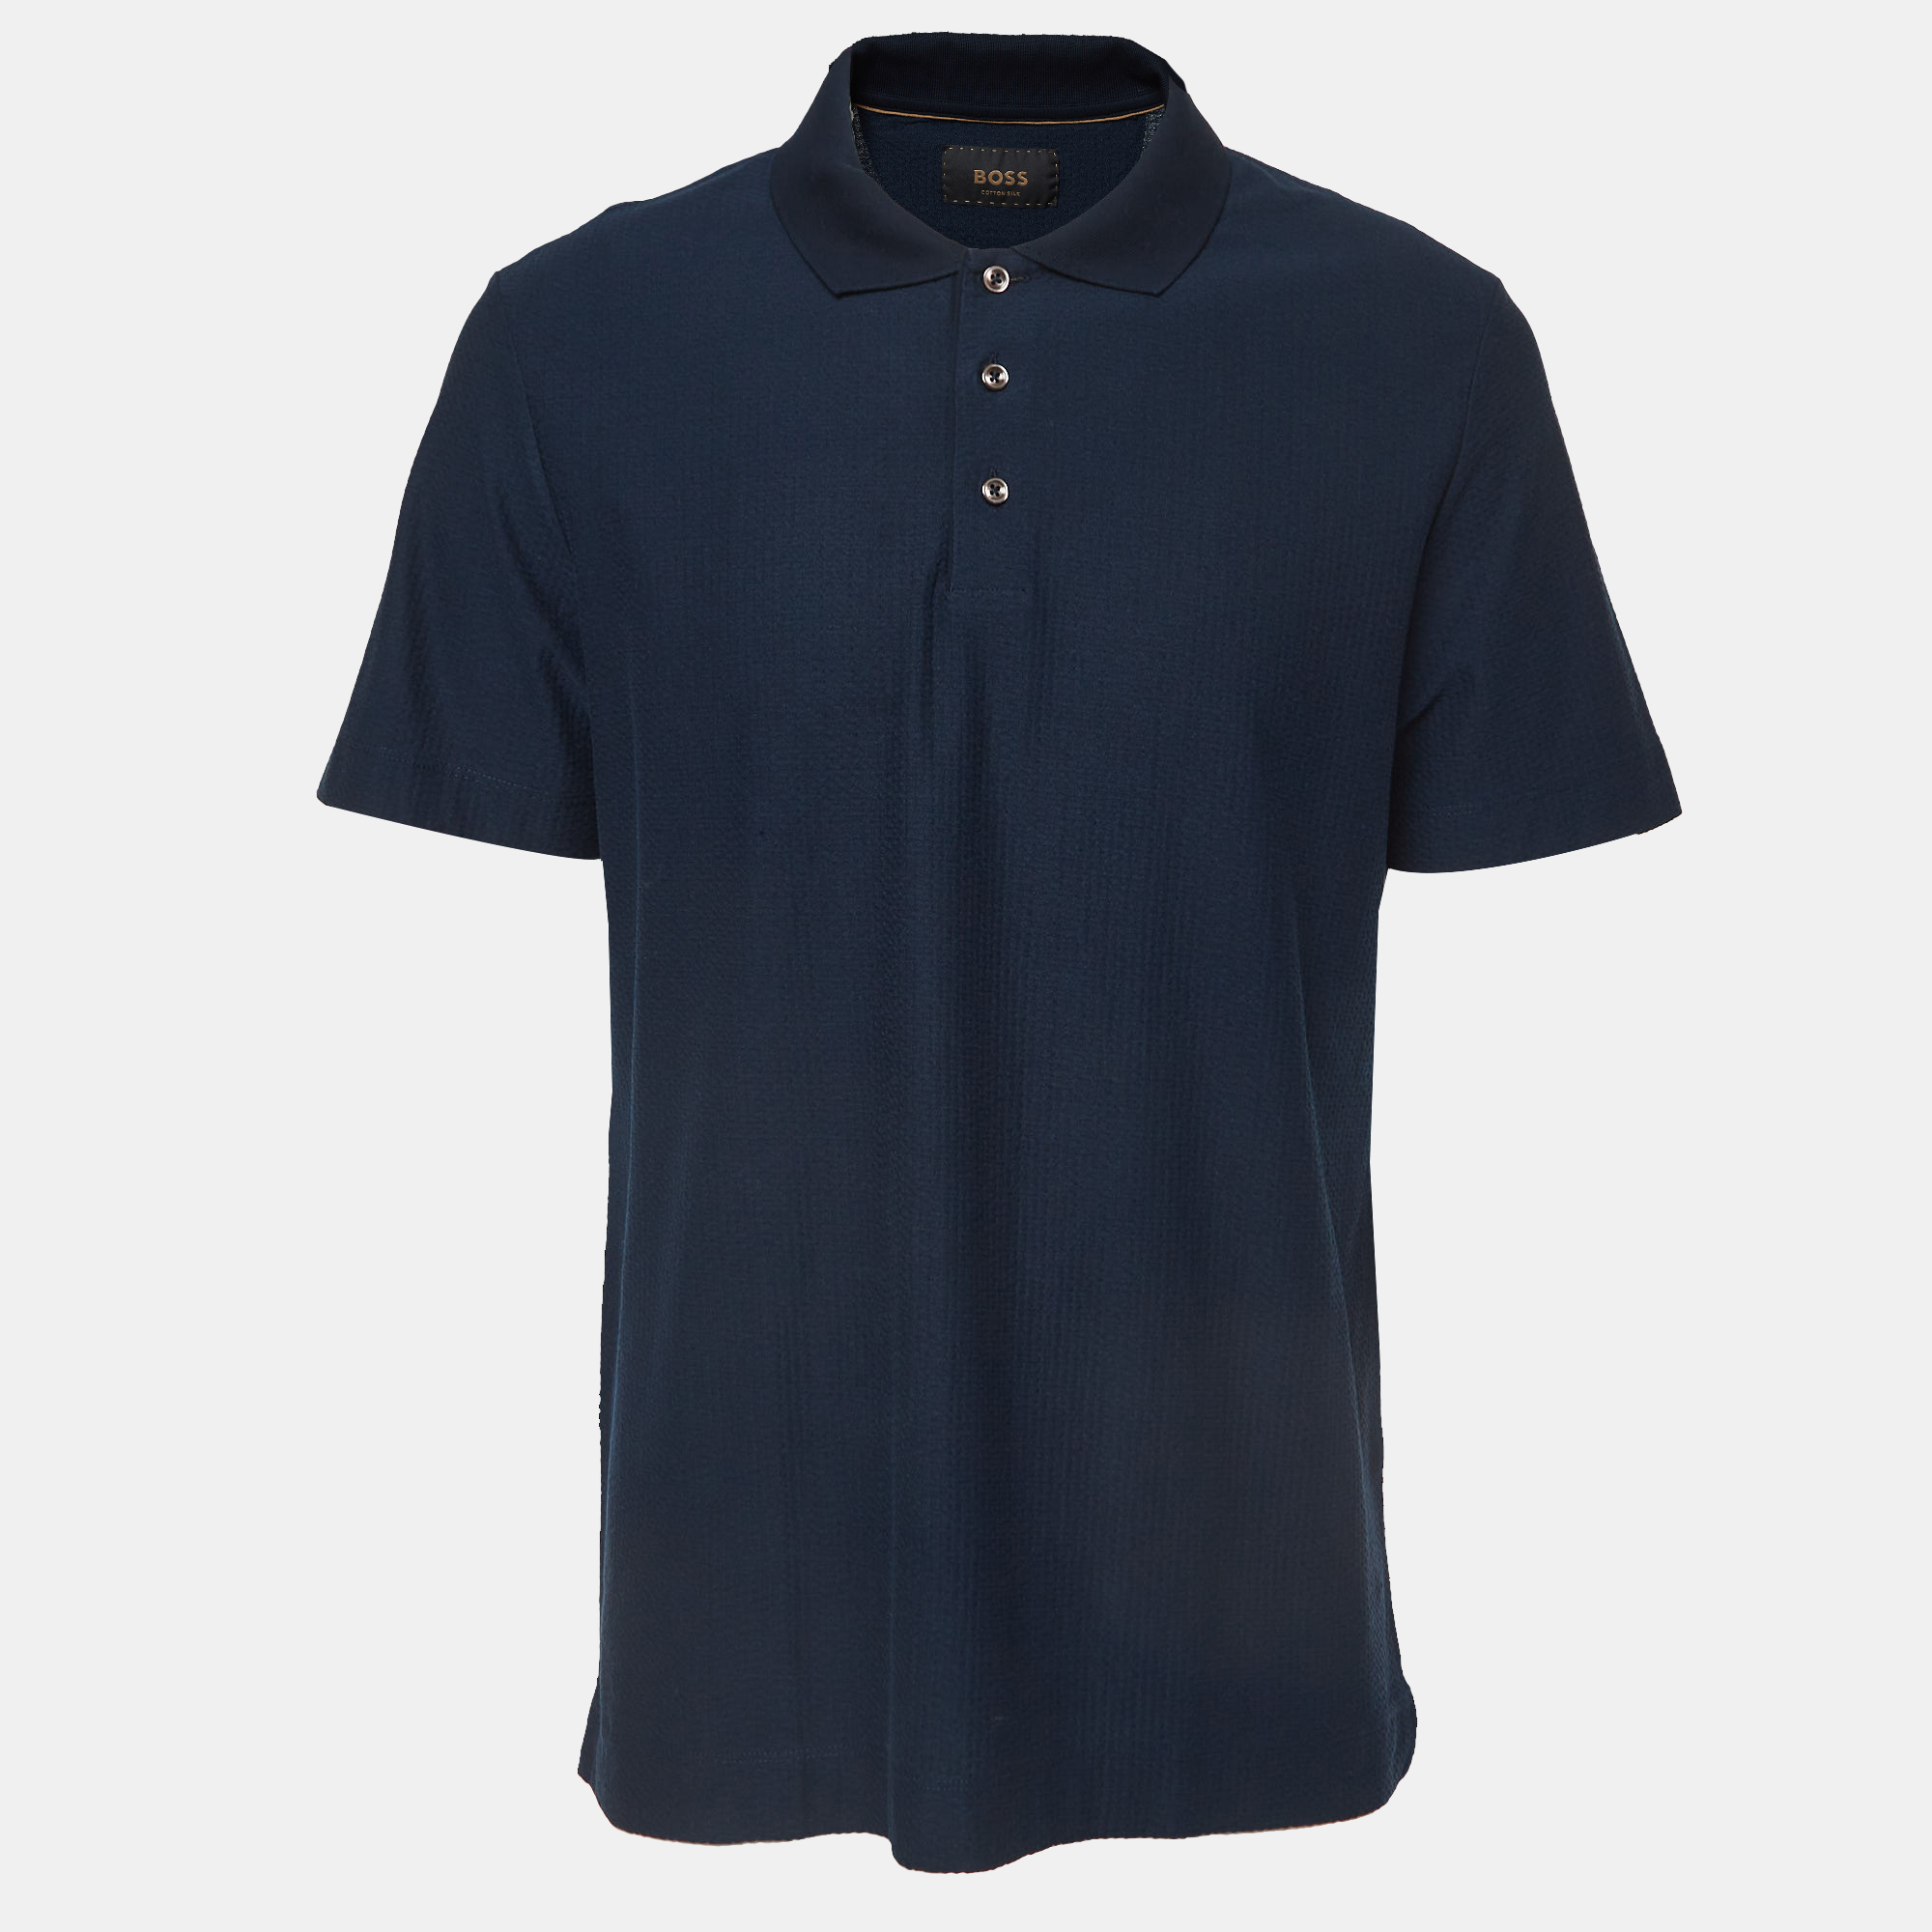 

Boss By Hugo Boss Navy Blue Textured Jersey Polo T-Shirt